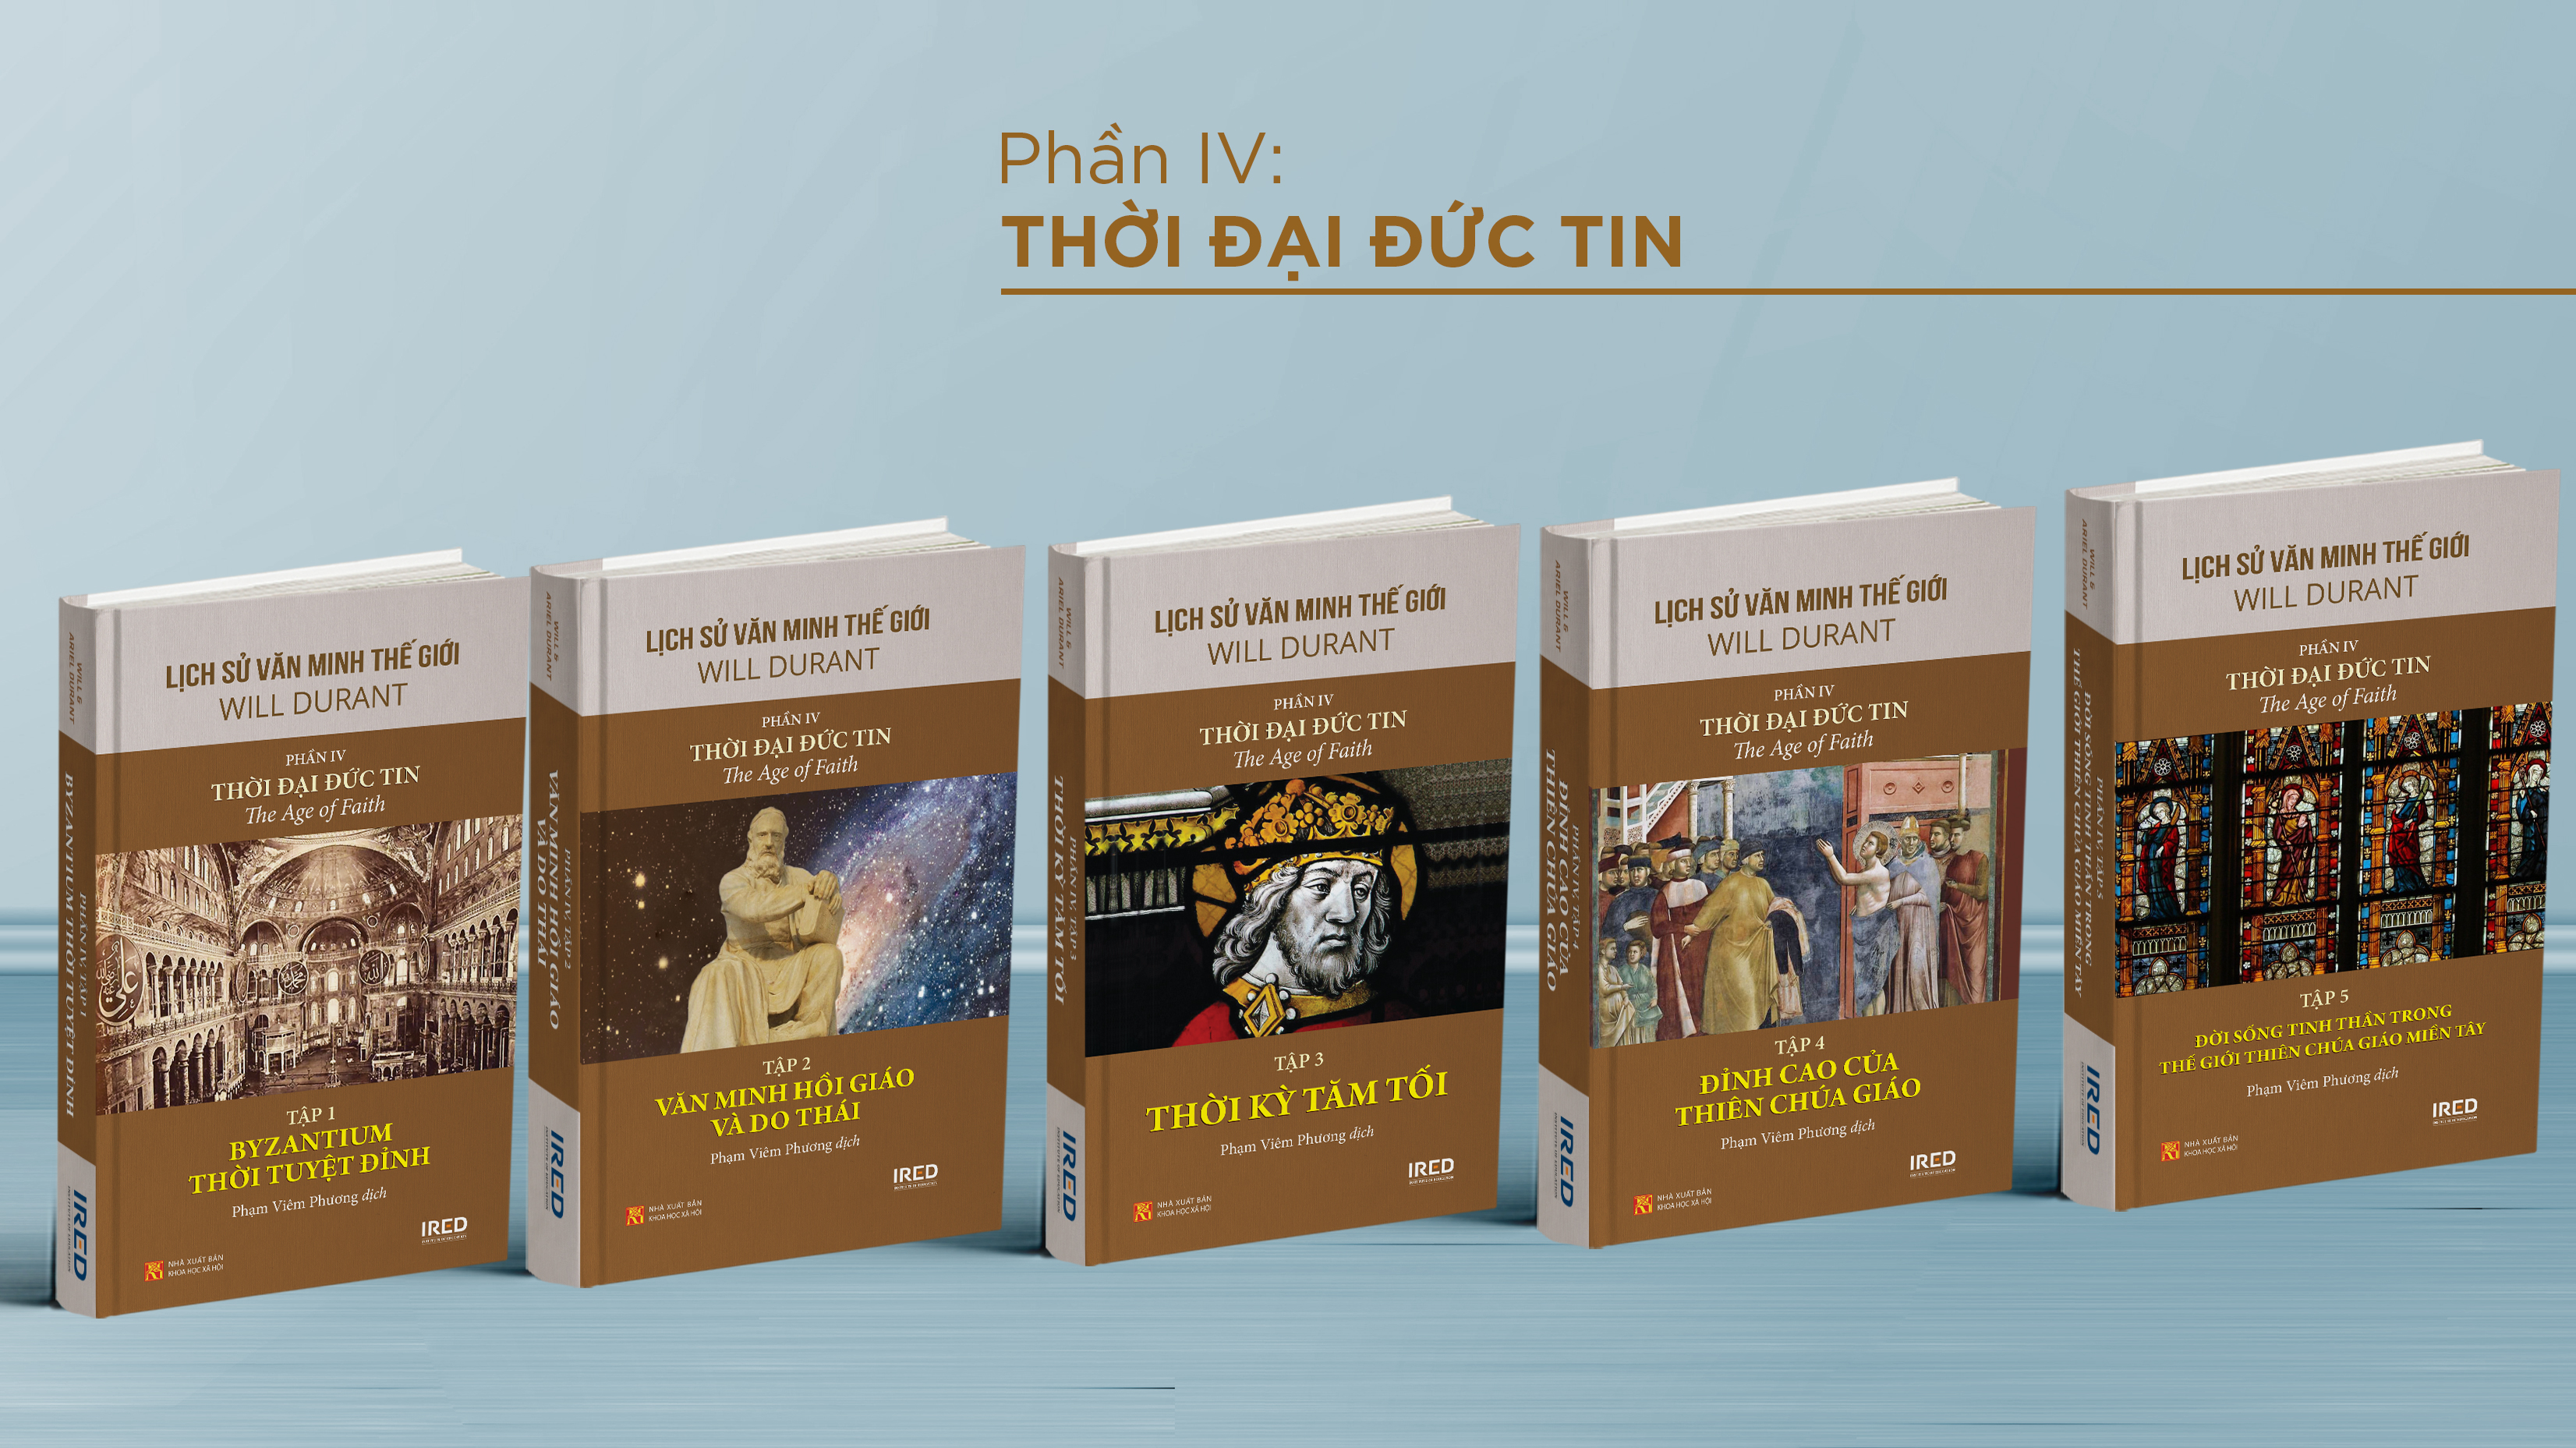 (Bộ 5 Tập) Phần IV: Thời Đại Đức Tin (thuộc Bộ sách LỊCH SỬ VĂN MINH THẾ GIỚI) - Will Durant - Phạm Viêm Phương dịch - (bìa cứng)